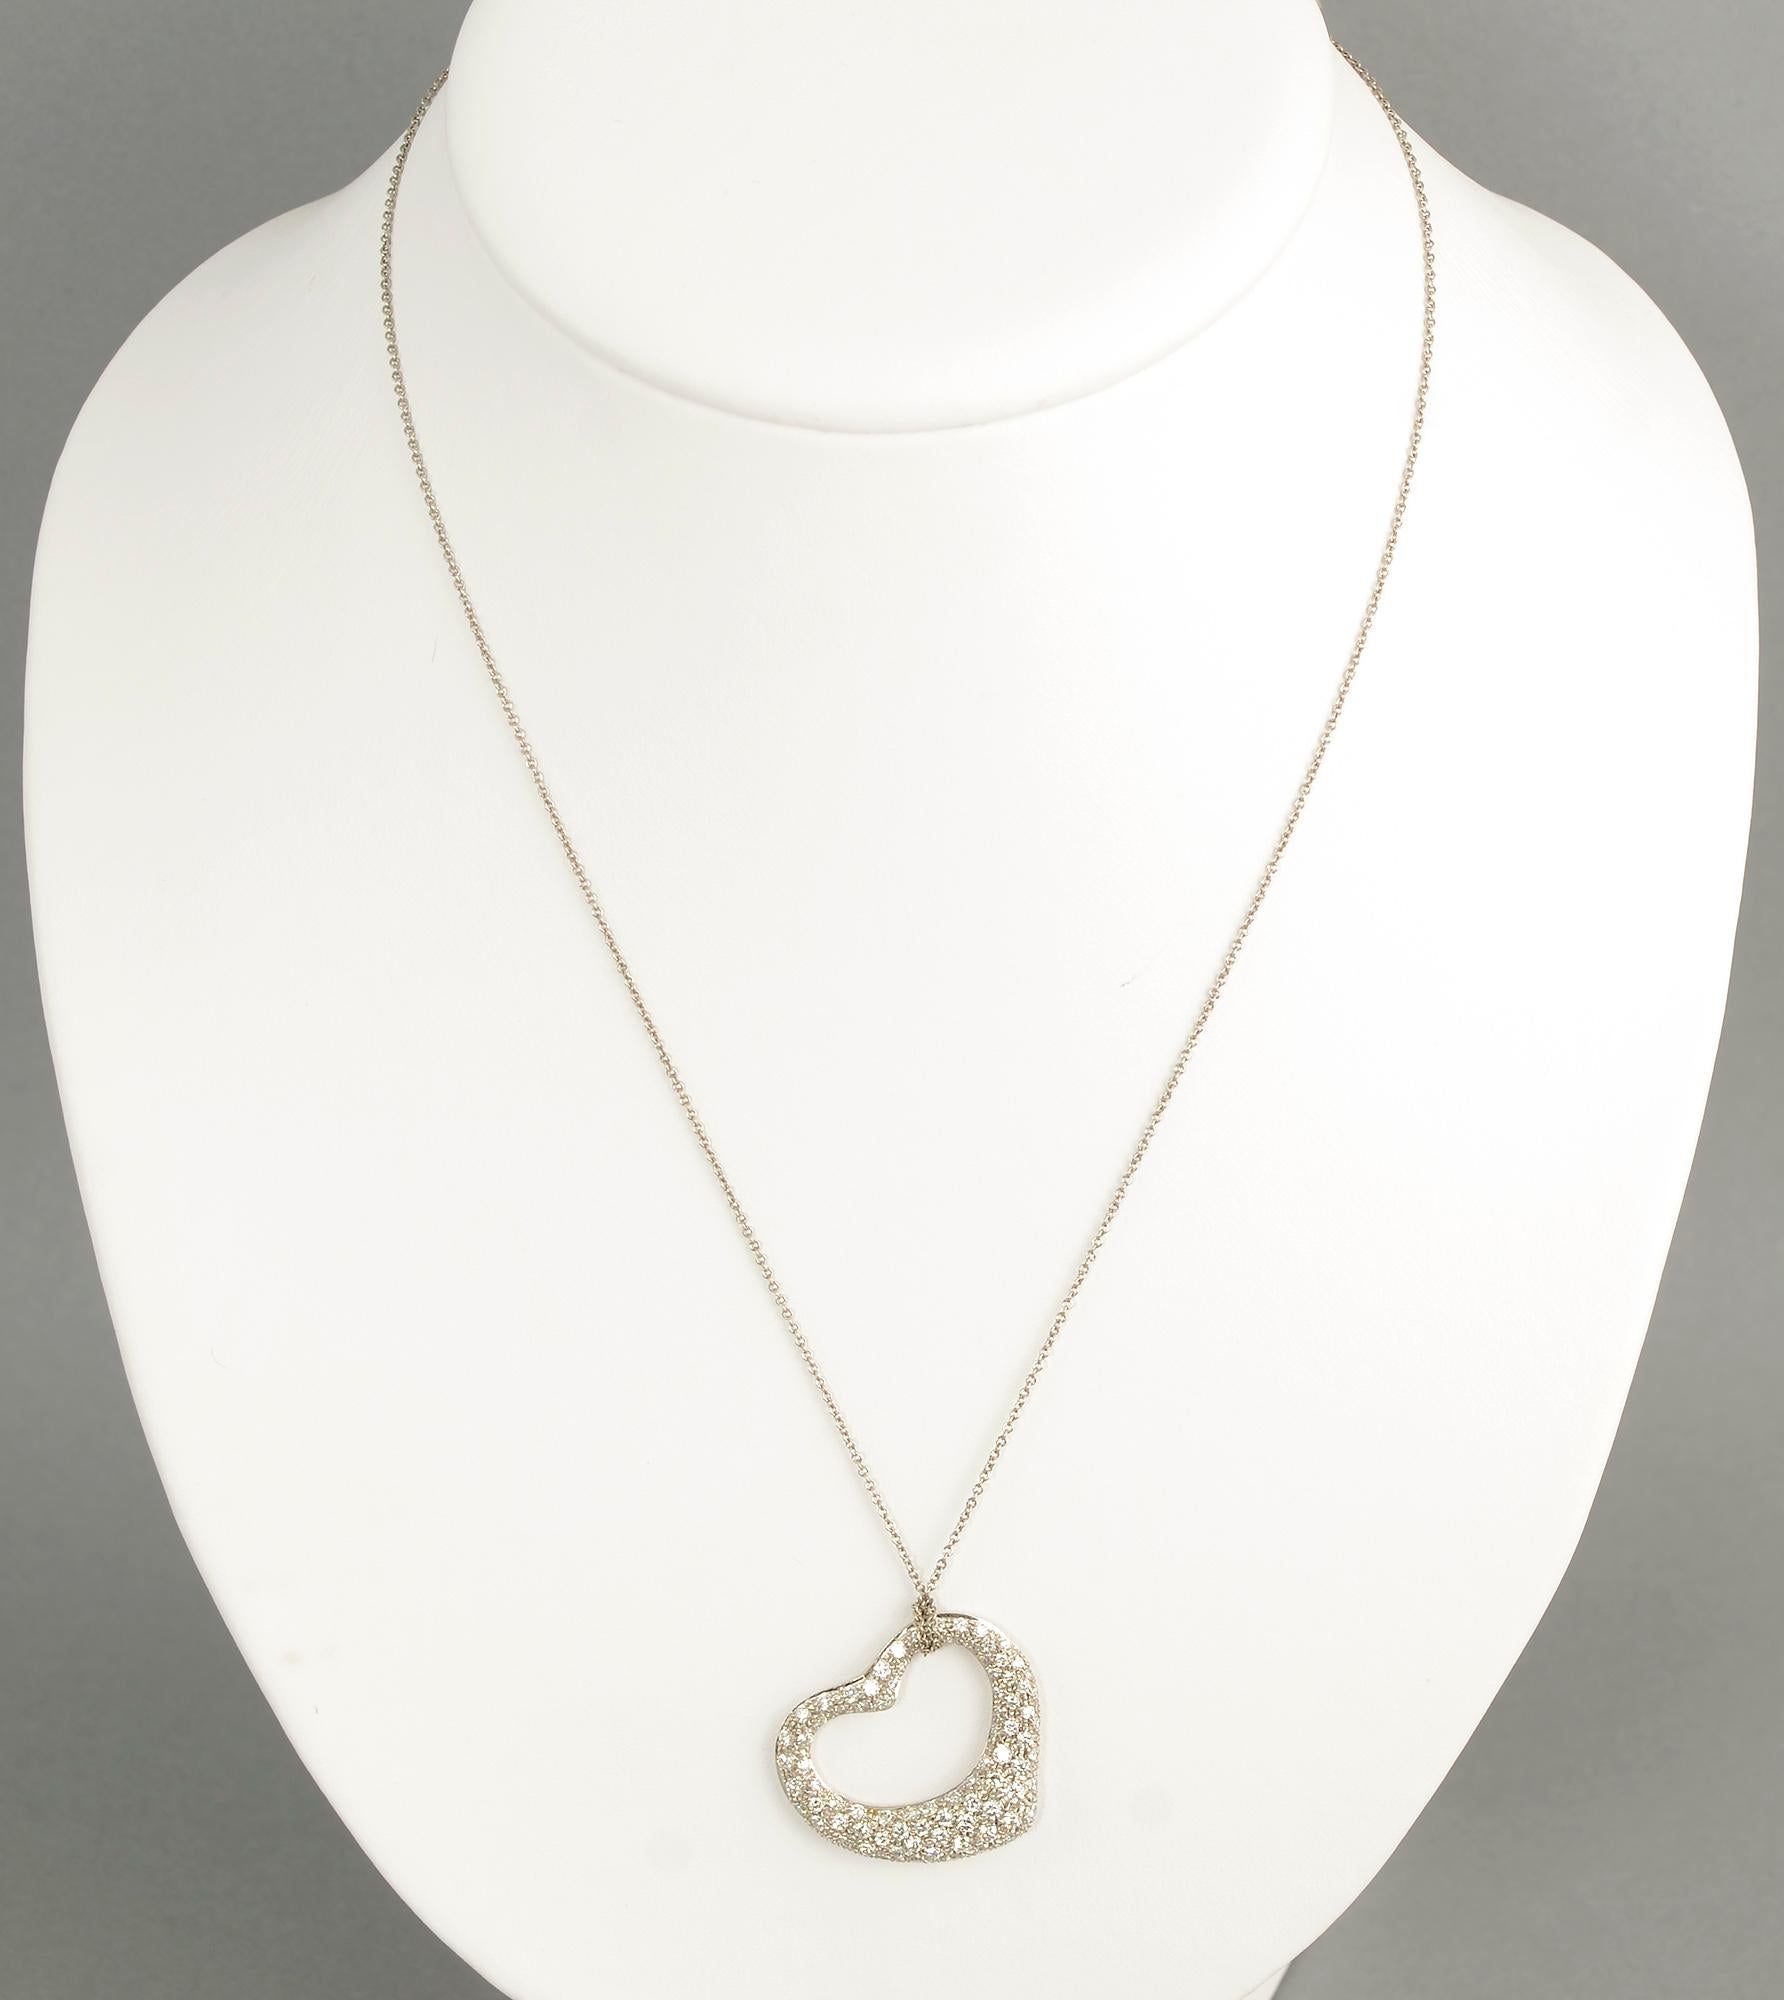 Pendentif Paloma Picasso for Tiffany à cœur ouvert sur une chaîne en platine de 18 pouces. Elle comporte environ 2 carats de diamants de qualité IF à VS 2, de couleur G à J. Les diamants sont sertis dans du platine. Le cœur est vendu dans l'étui de